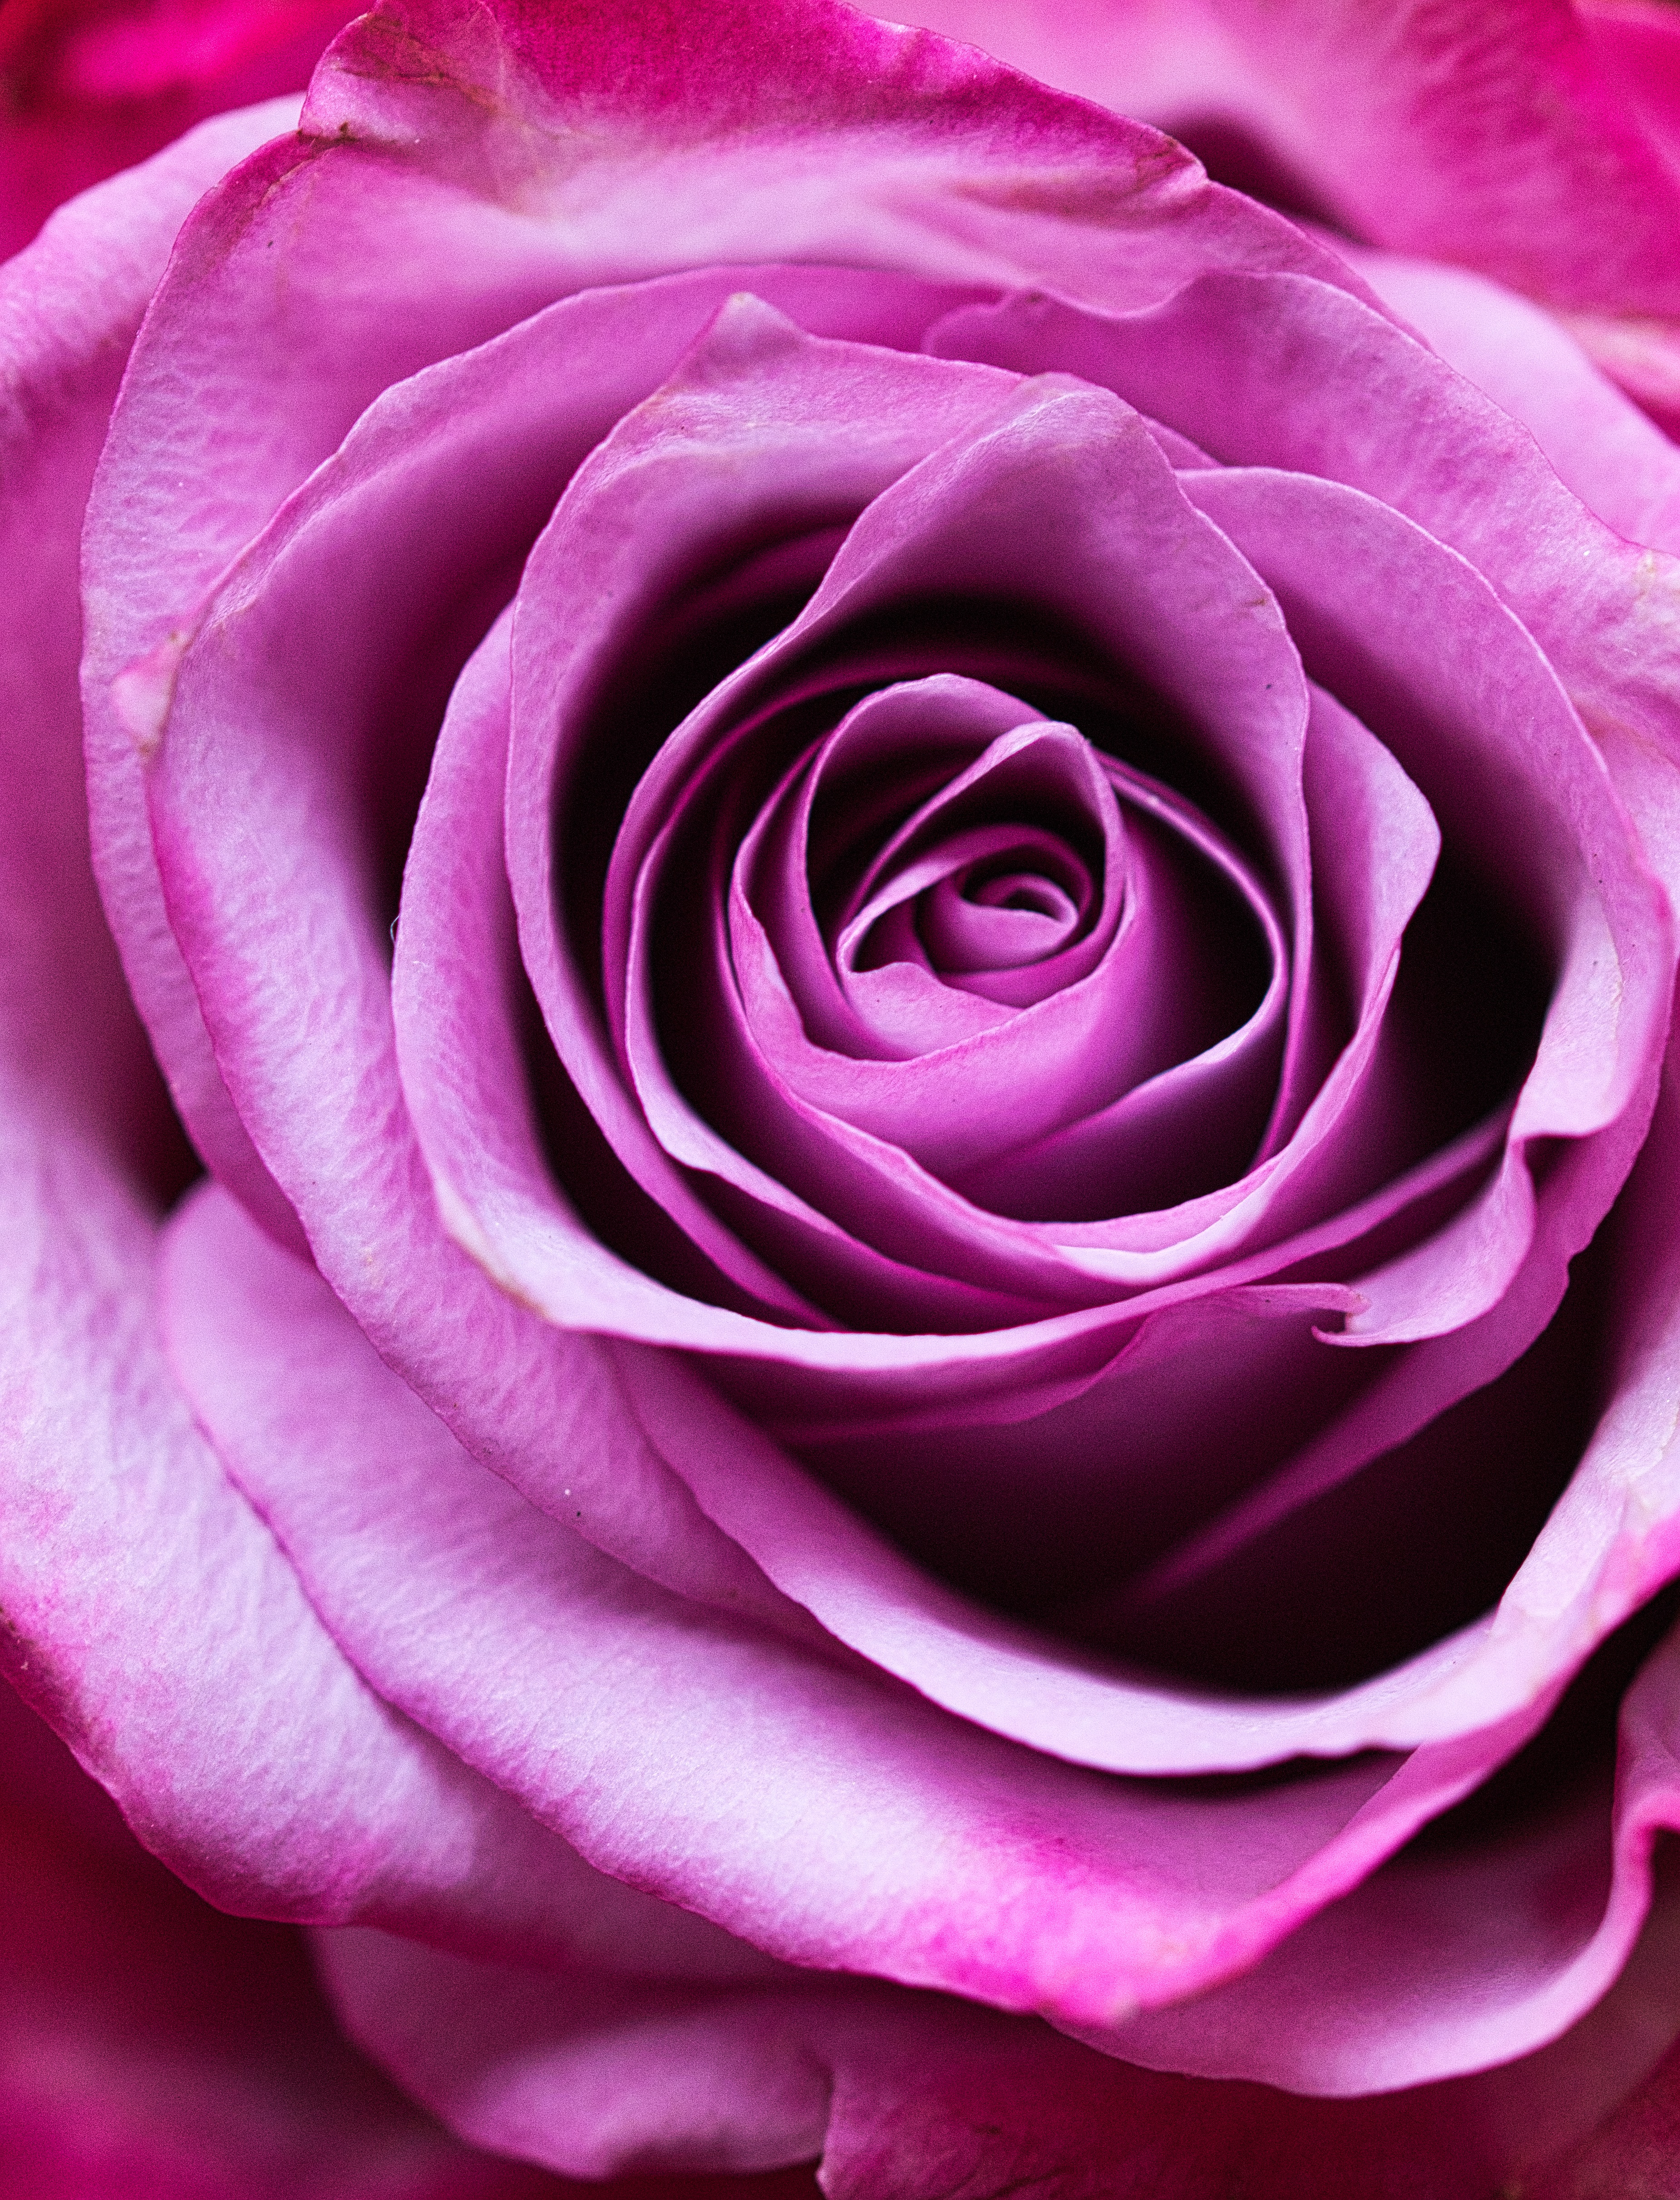 petals, romance, flowers, pink, flower, rose flower, rose, close up Image for desktop